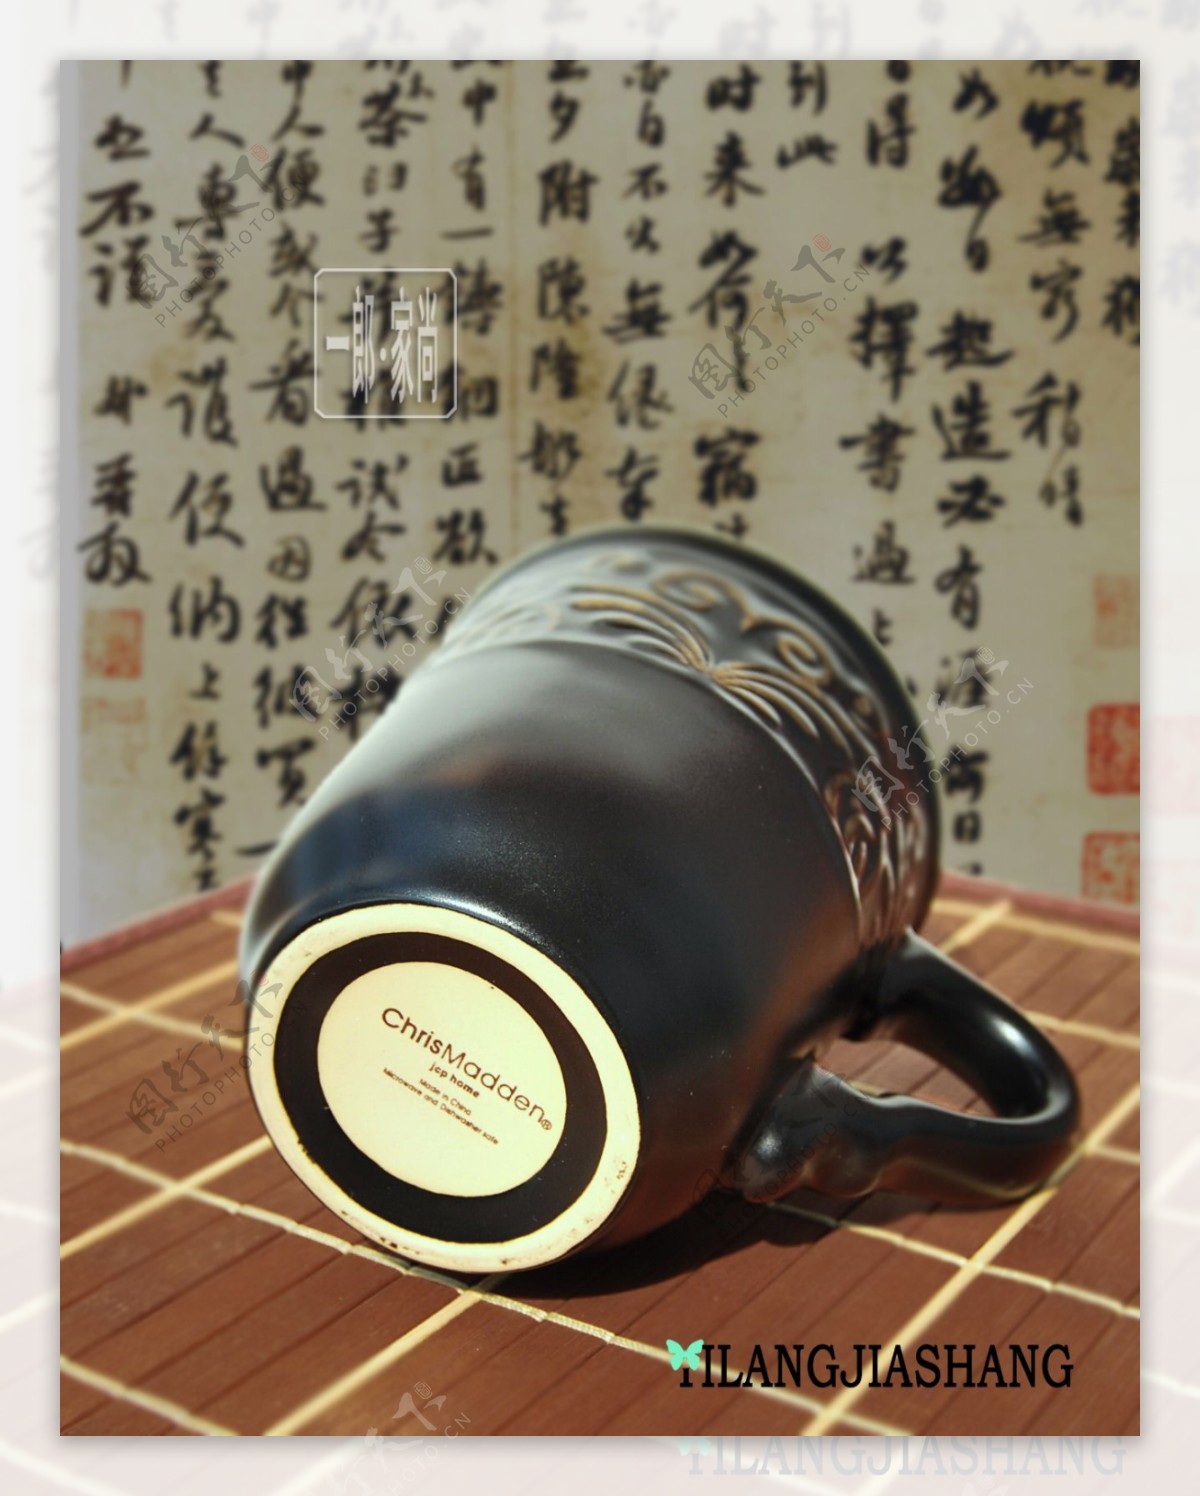 中国古典纹样杯子图片